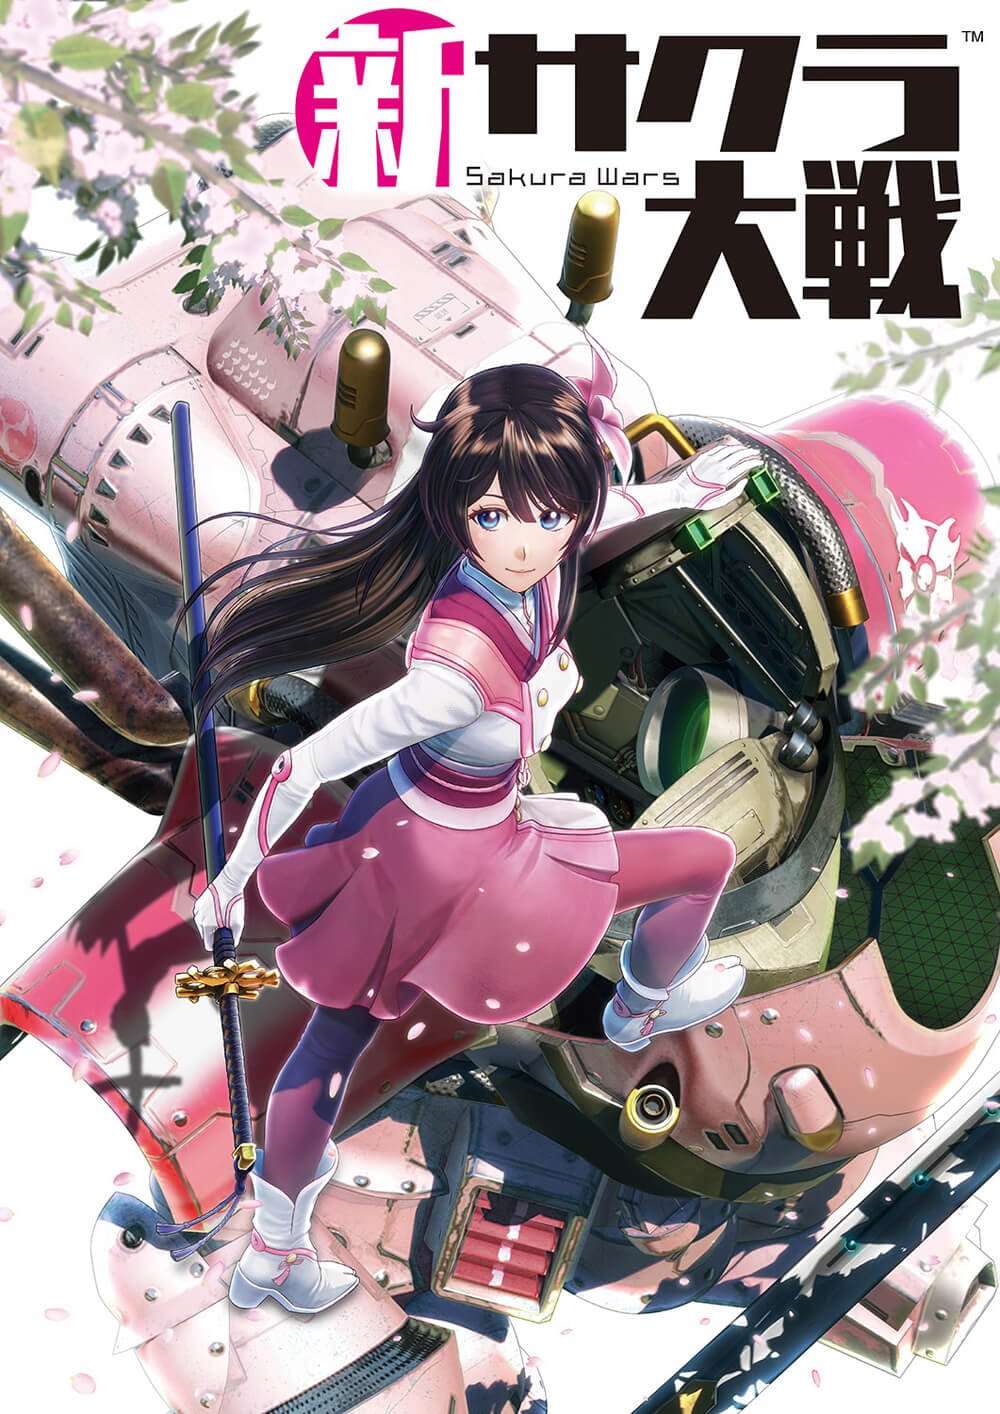 Shin Sakura Wars (2019)